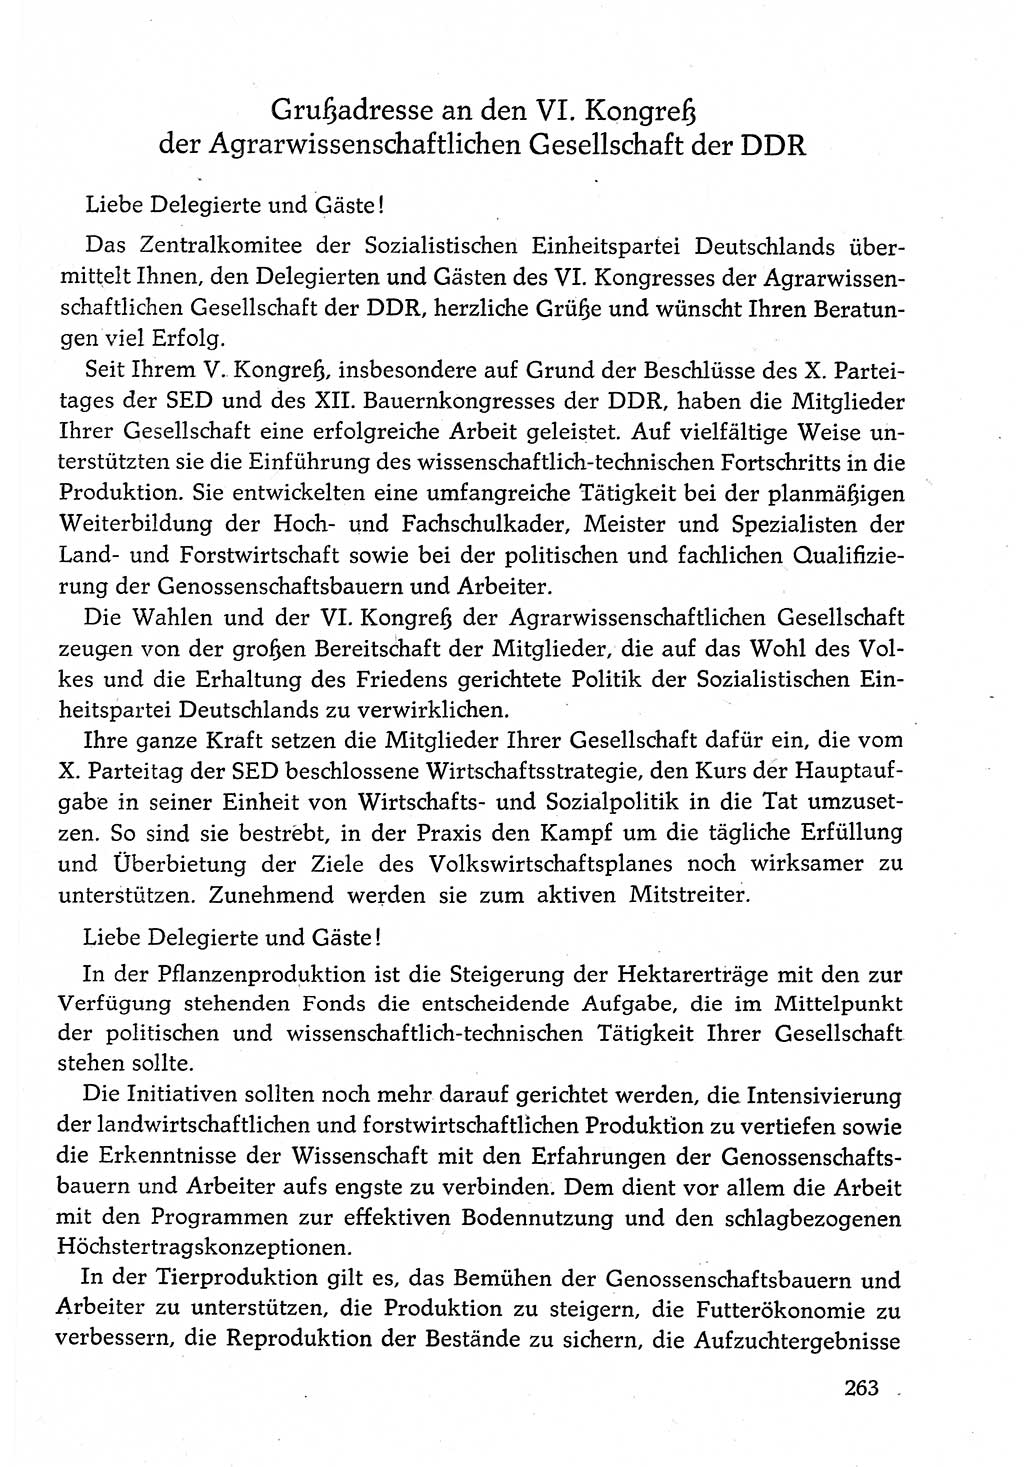 Dokumente der Sozialistischen Einheitspartei Deutschlands (SED) [Deutsche Demokratische Republik (DDR)] 1982-1983, Seite 263 (Dok. SED DDR 1982-1983, S. 263)